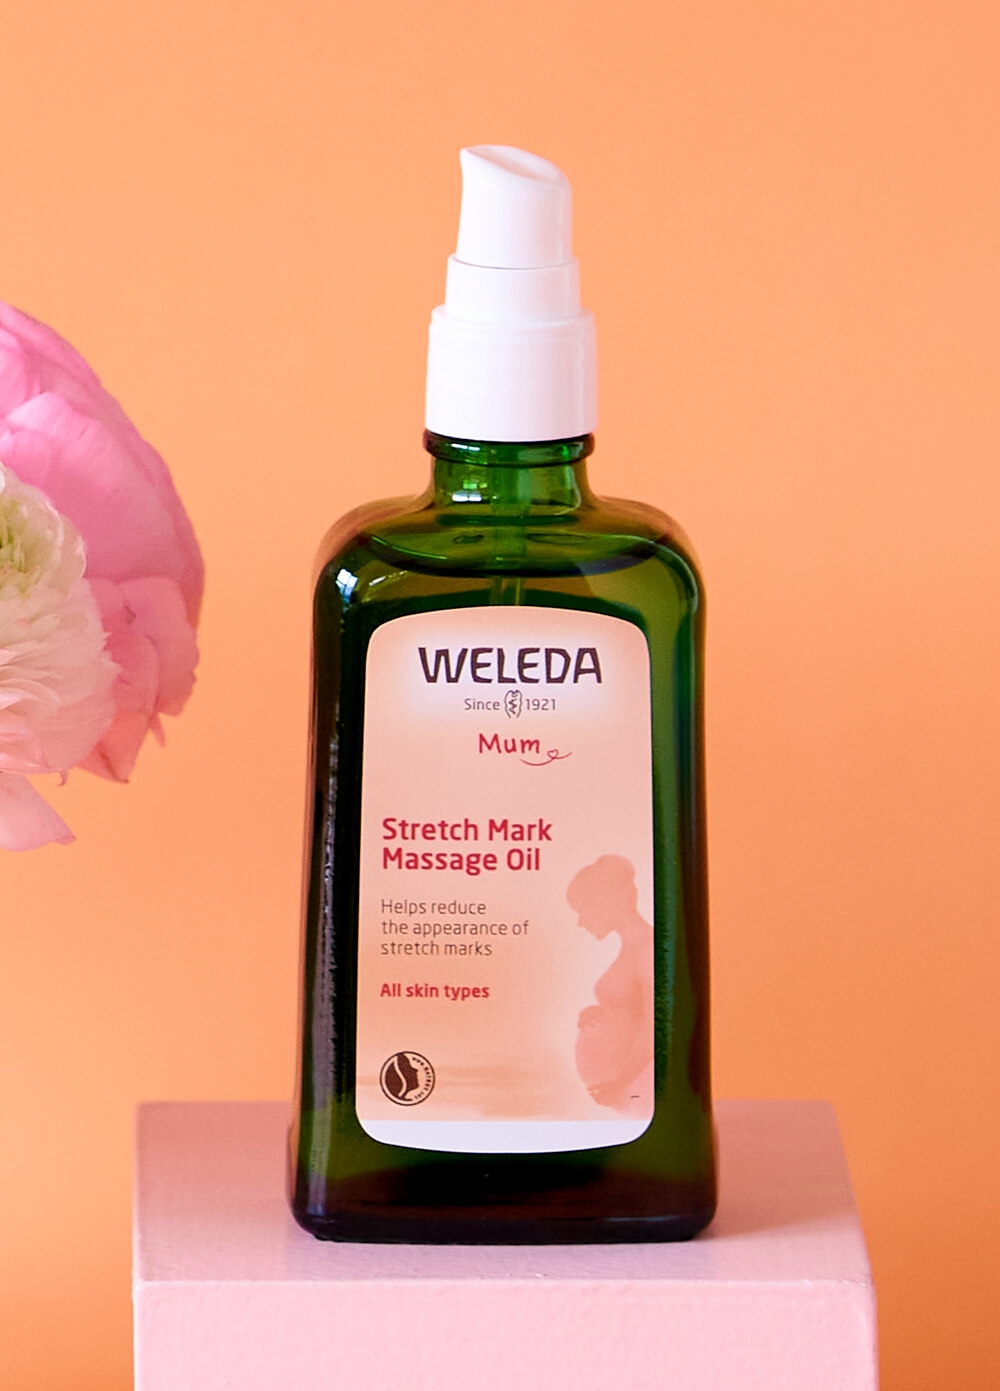 Weleda - Stretch Mark Massage Oil